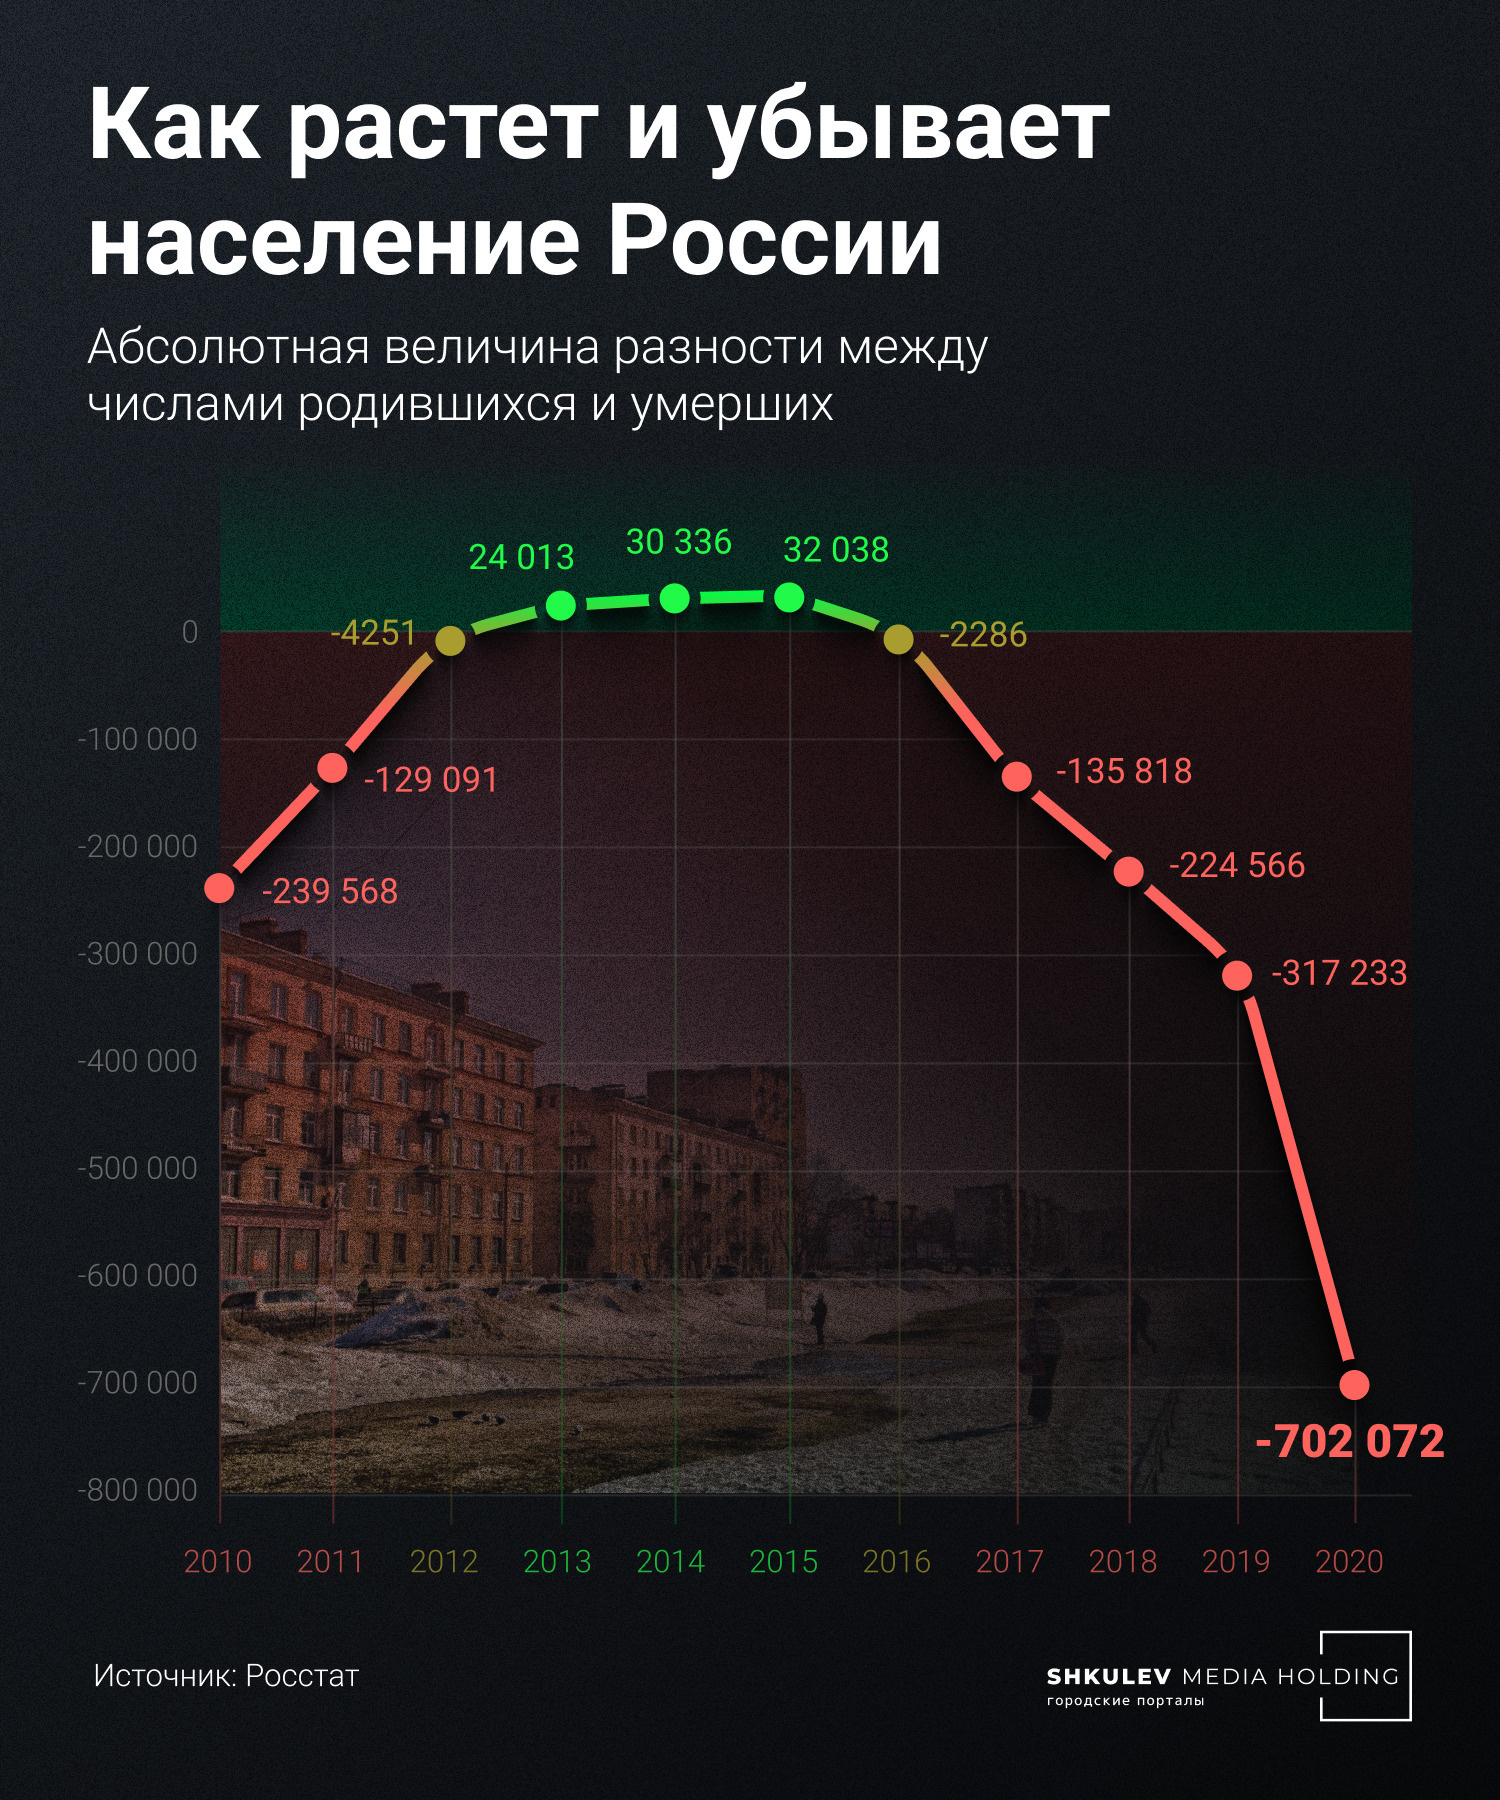 За десять лет рождаемость в России превышала смертность только трижды